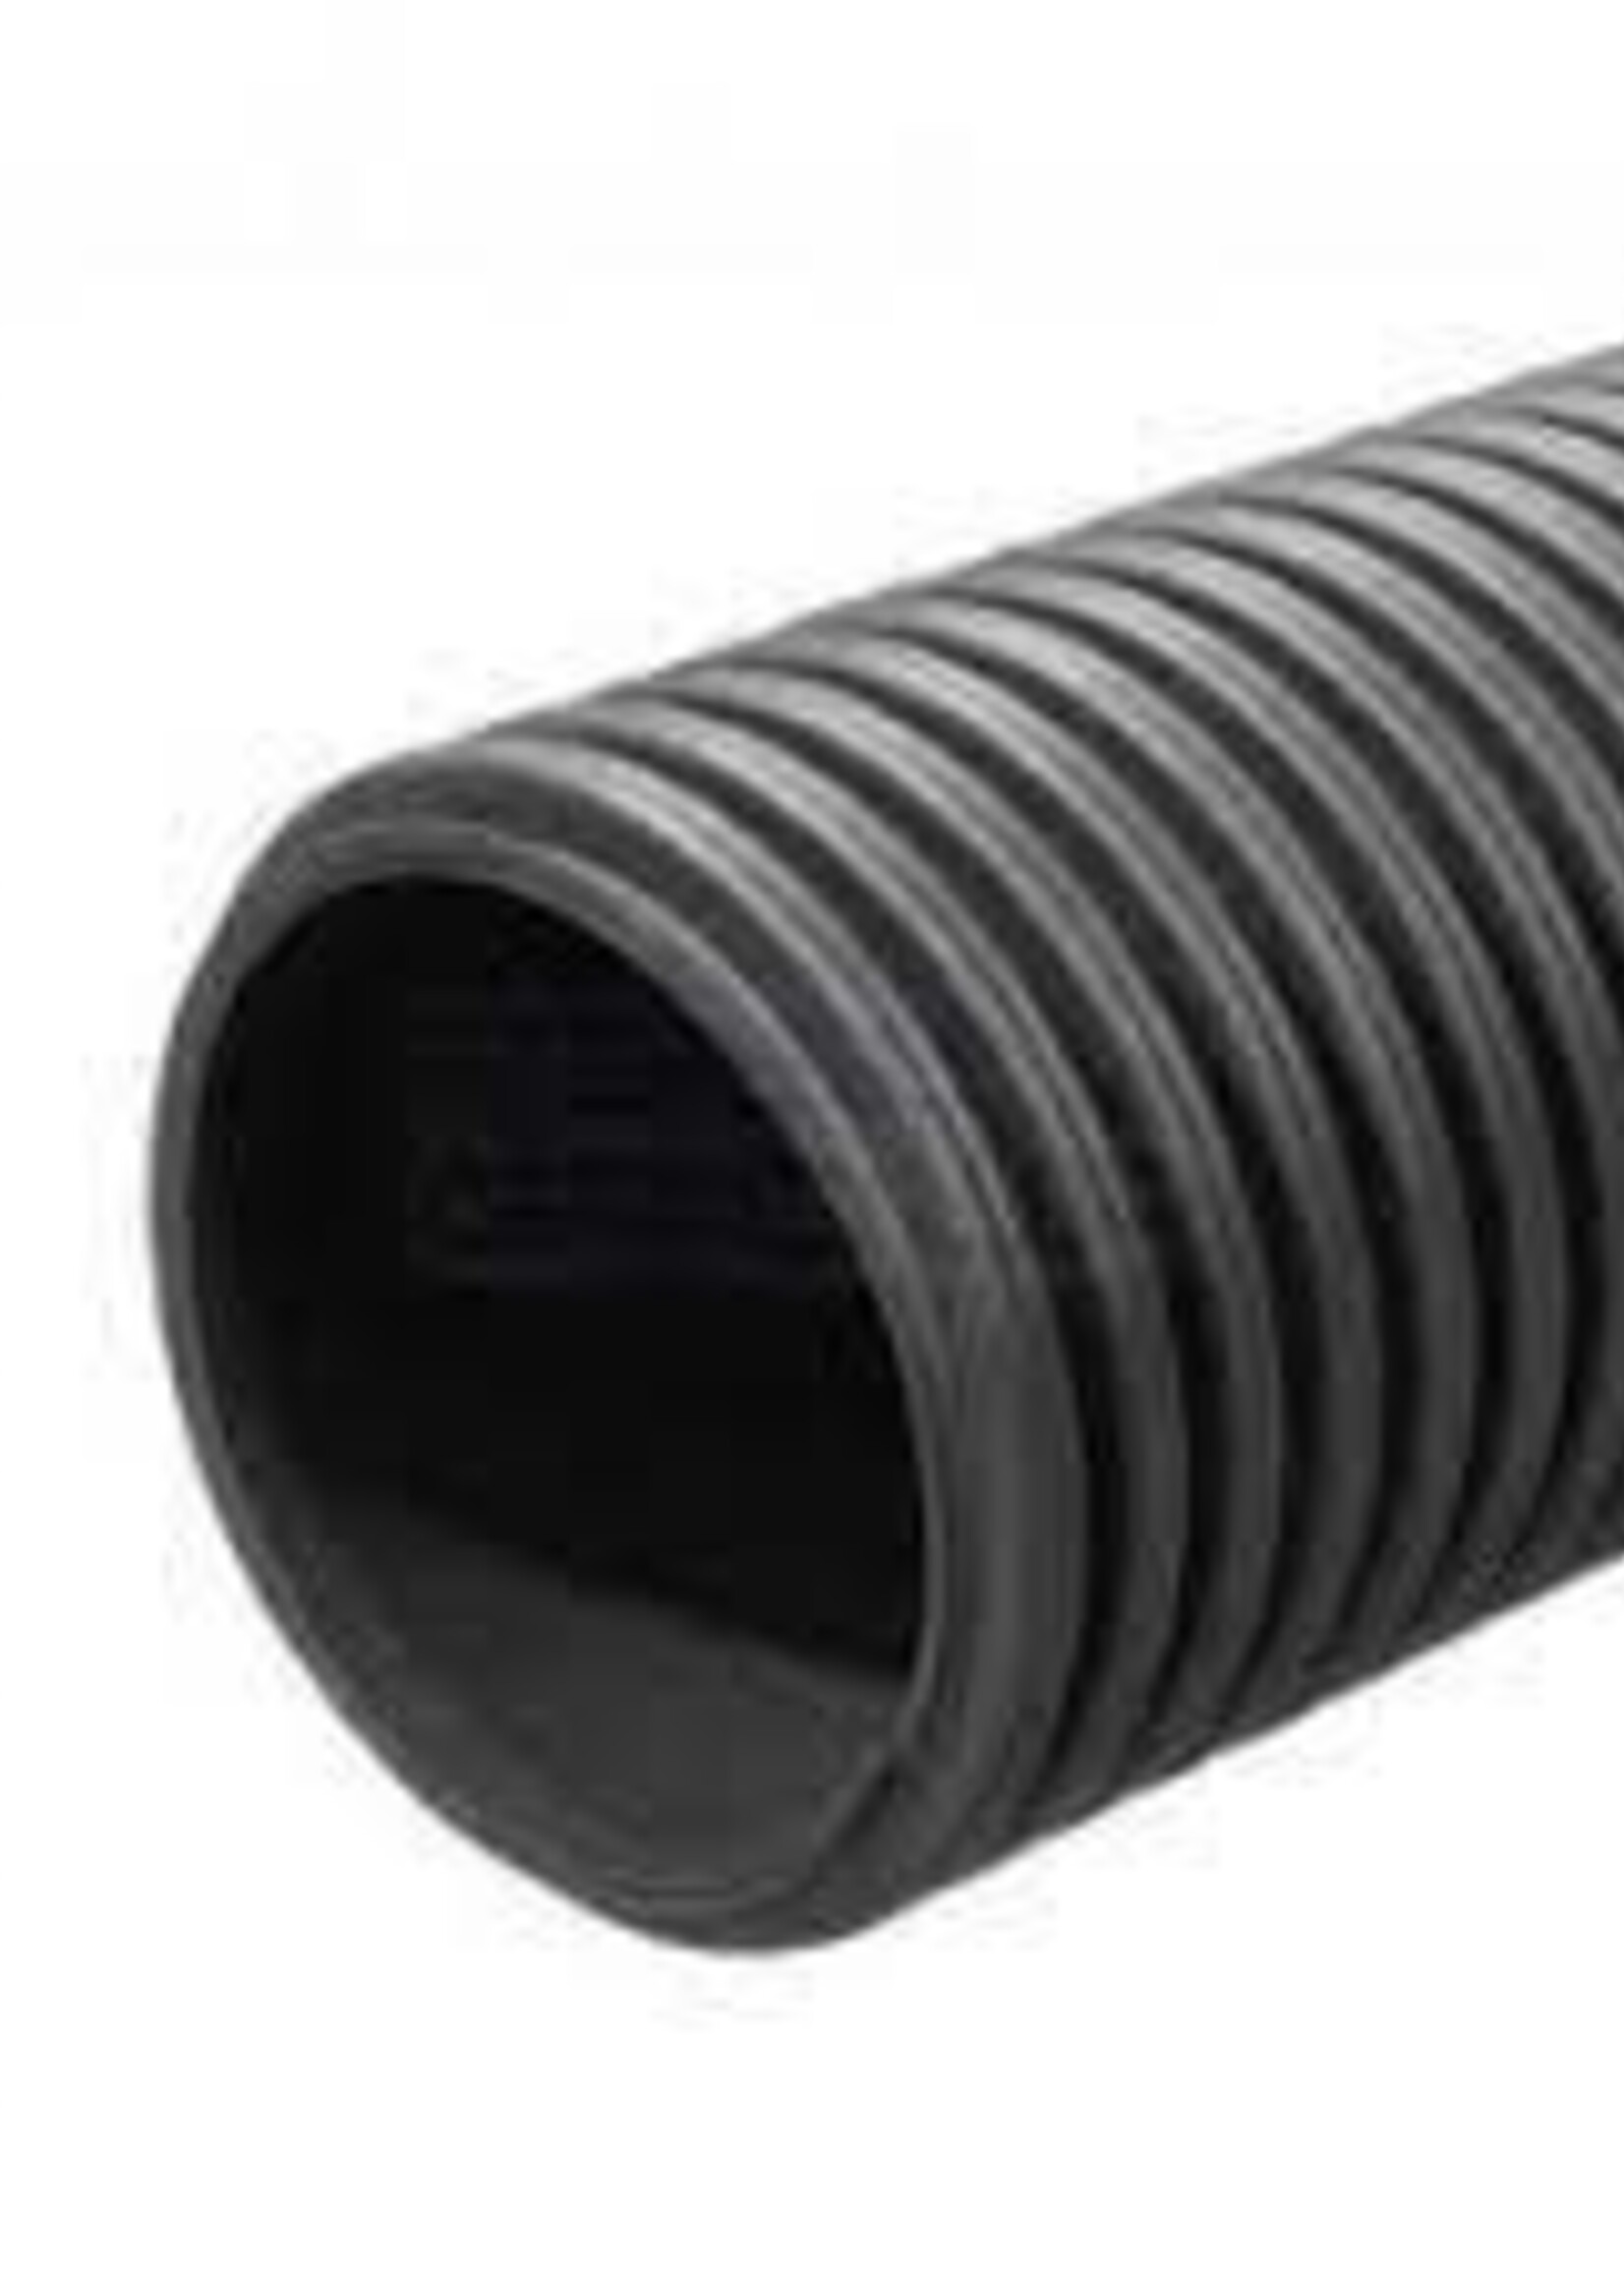 Corrugated Tube / Hose / Pipe 25mm Black (Price per Mtr)